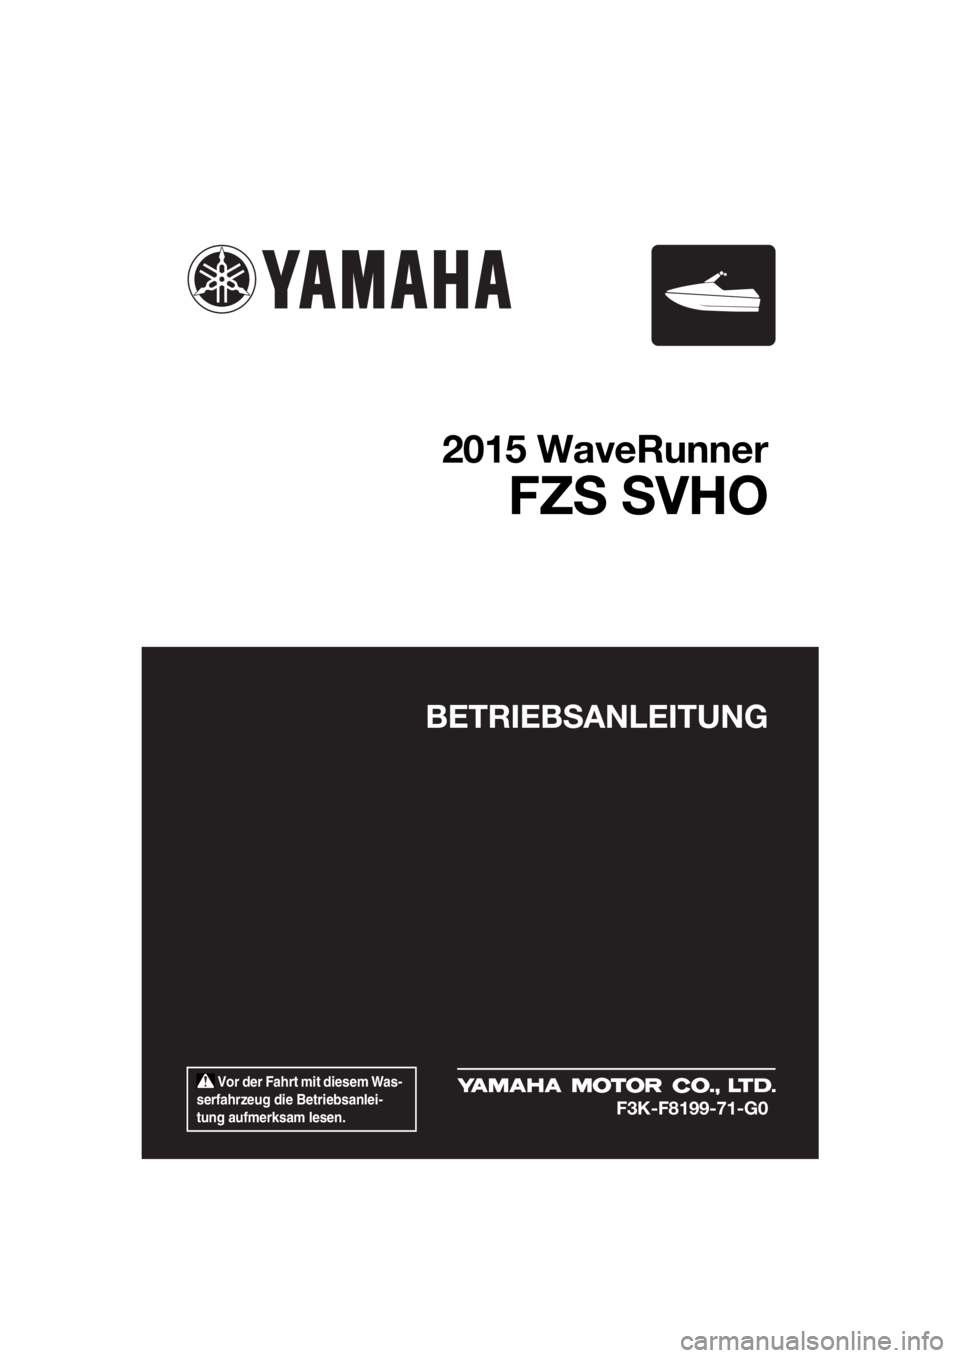 YAMAHA FZS 2015  Betriebsanleitungen (in German)  Vor der Fahrt mit diesem Was-
serfahrzeug die Betriebsanlei-
tung aufmerksam lesen.
BETRIEBSANLEITUNG
2015 WaveRunner
FZS SVHO
F3K-F8199-71-G0
UF3K71G0.book  Page 1  Tuesday, August 5, 2014  4:28 PM 